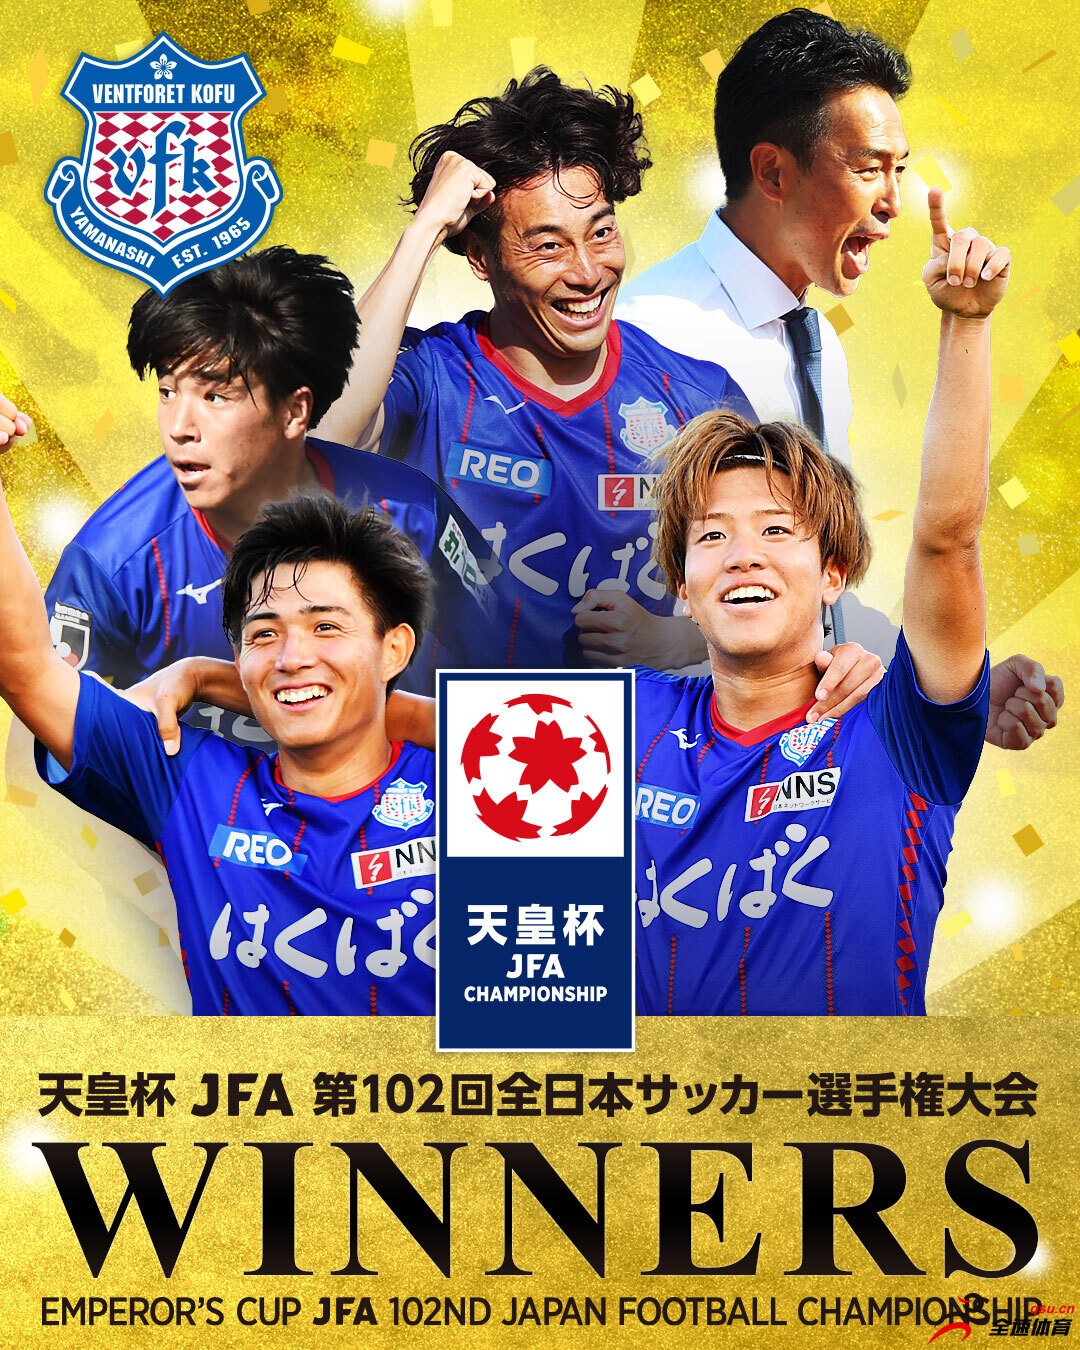 J2联赛第18位甲府风林爆冷击败广岛三箭夺天皇杯冠军，获亚冠资格